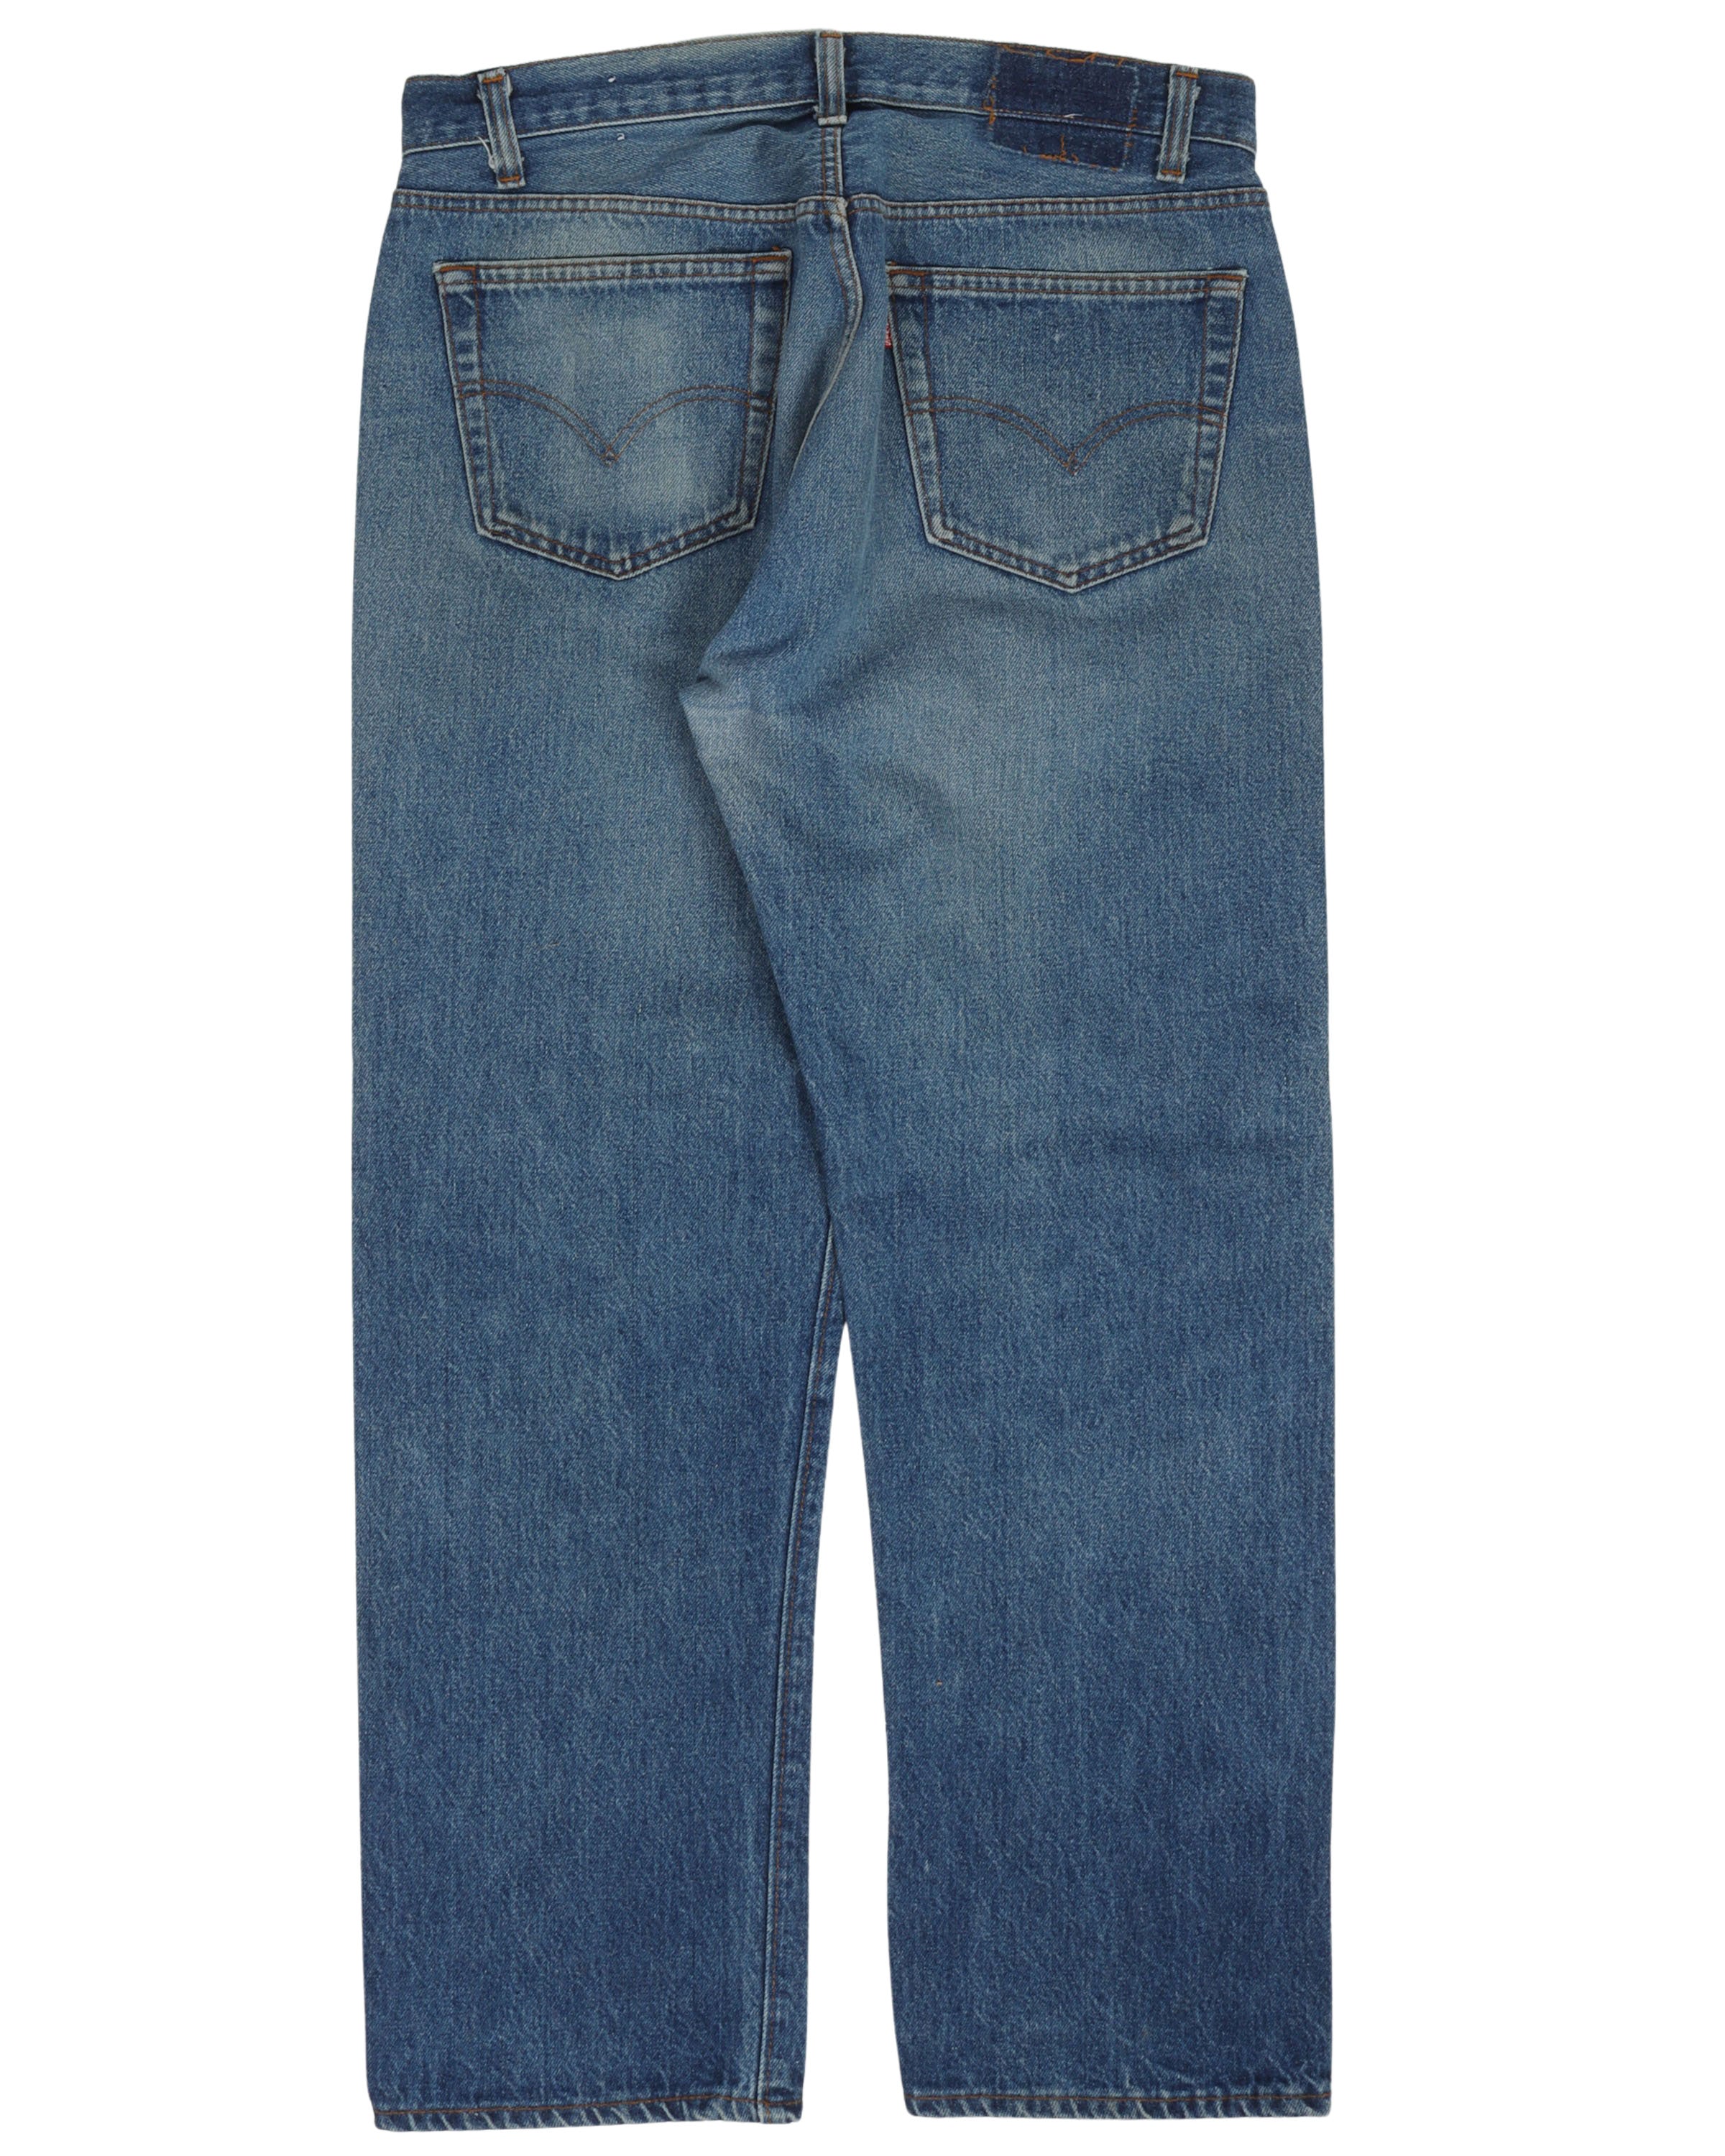 Levi's Indigo Jeans